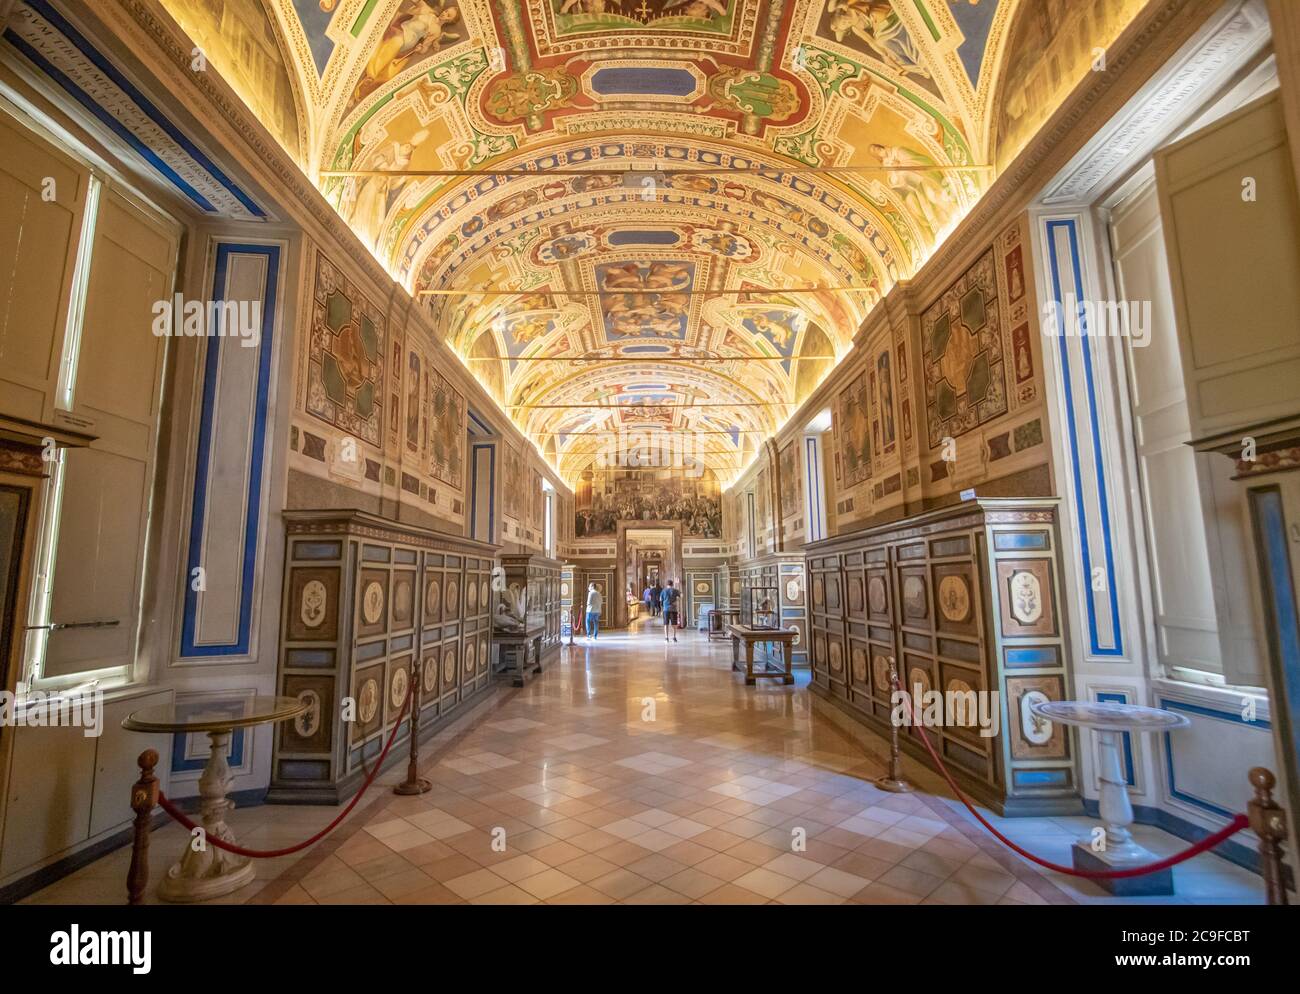 Los Museos Vaticanos son una inmensa colección de artefactos, frescos, pinturas y esculturas amasadas por la Iglesia Católica a lo largo de los siglos Foto de stock